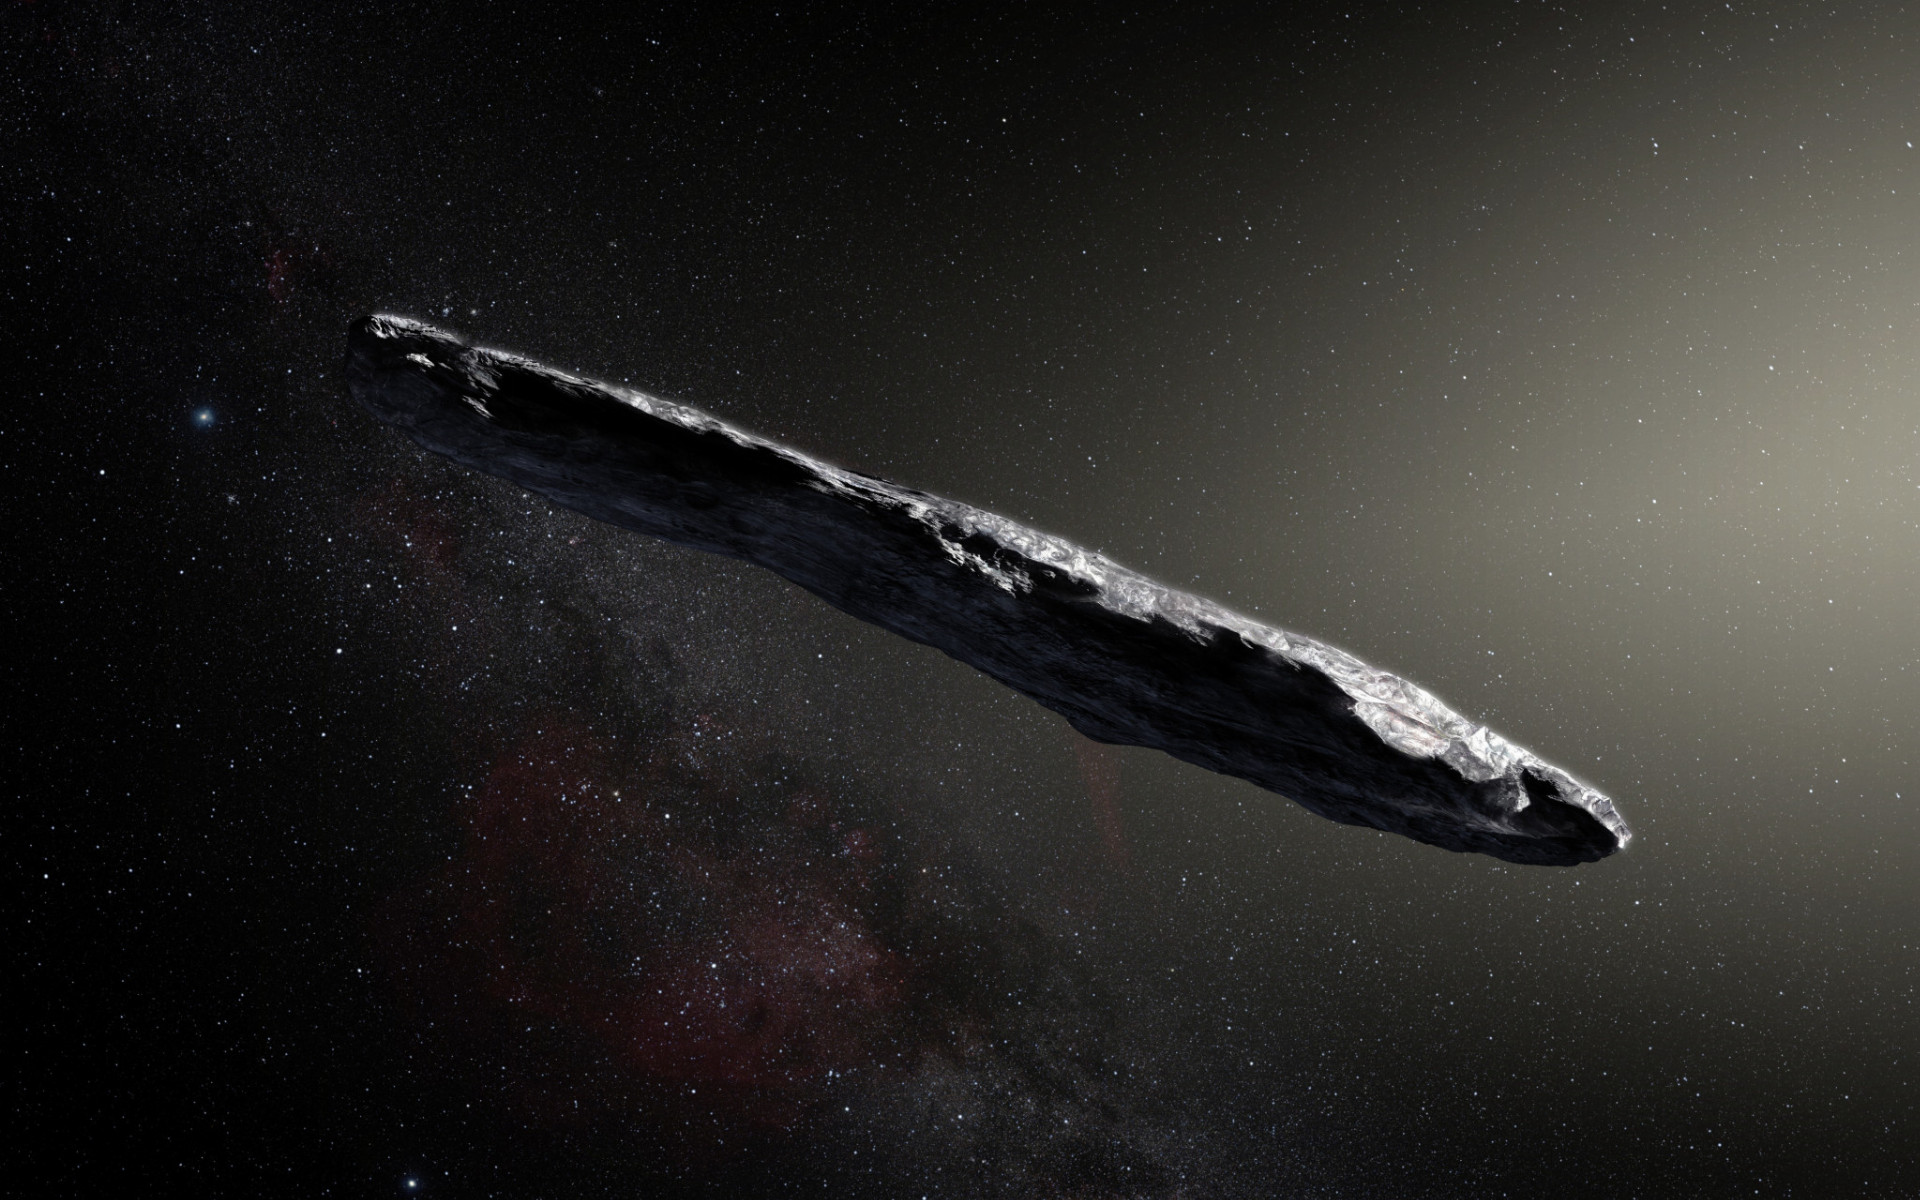 Astronómovia špehovali zvláštny predmet v tvare cigary už minulý rok, ale až v roku 2018 astronómovia dospeli k záveru, že Oumuamua je malá kométa. Ale diskusia o tajomnom objekte pokračuje, pričom niektorí uznávaní vedci tvrdia, že existuje šanca, že by to mohla byť mimozemská kozmická loď.